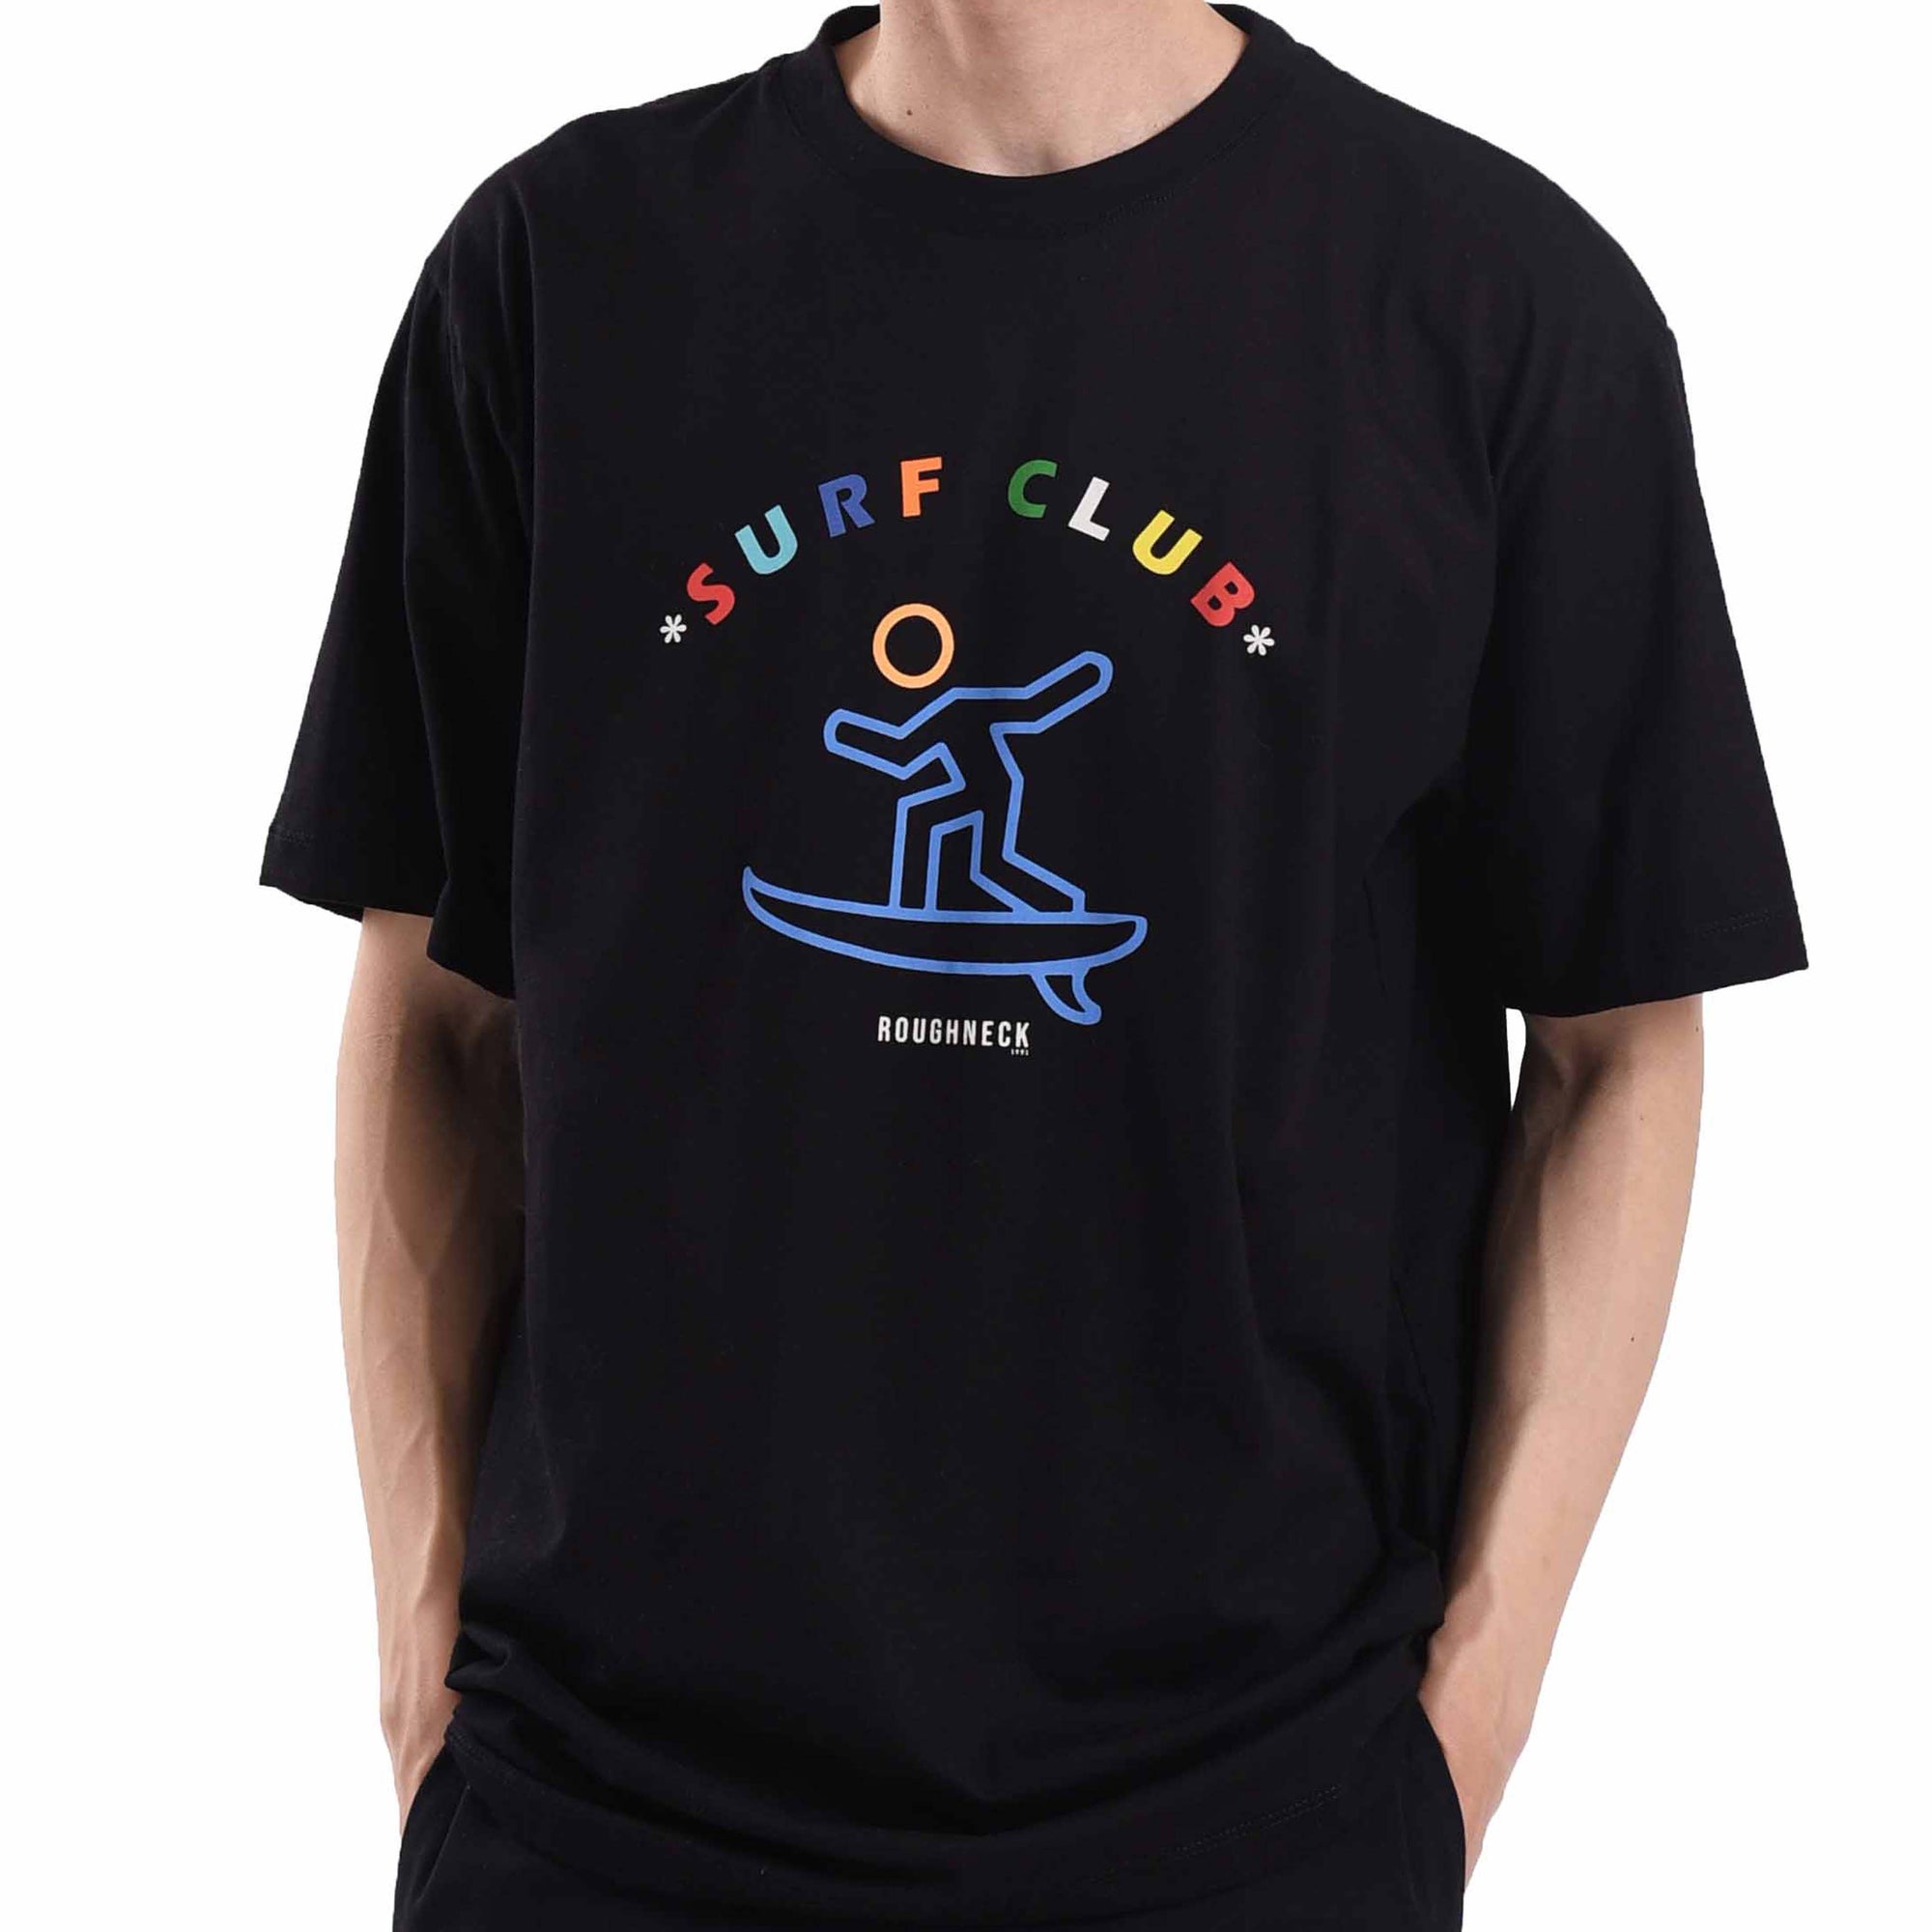 T534 Black Surf Club Tshirt